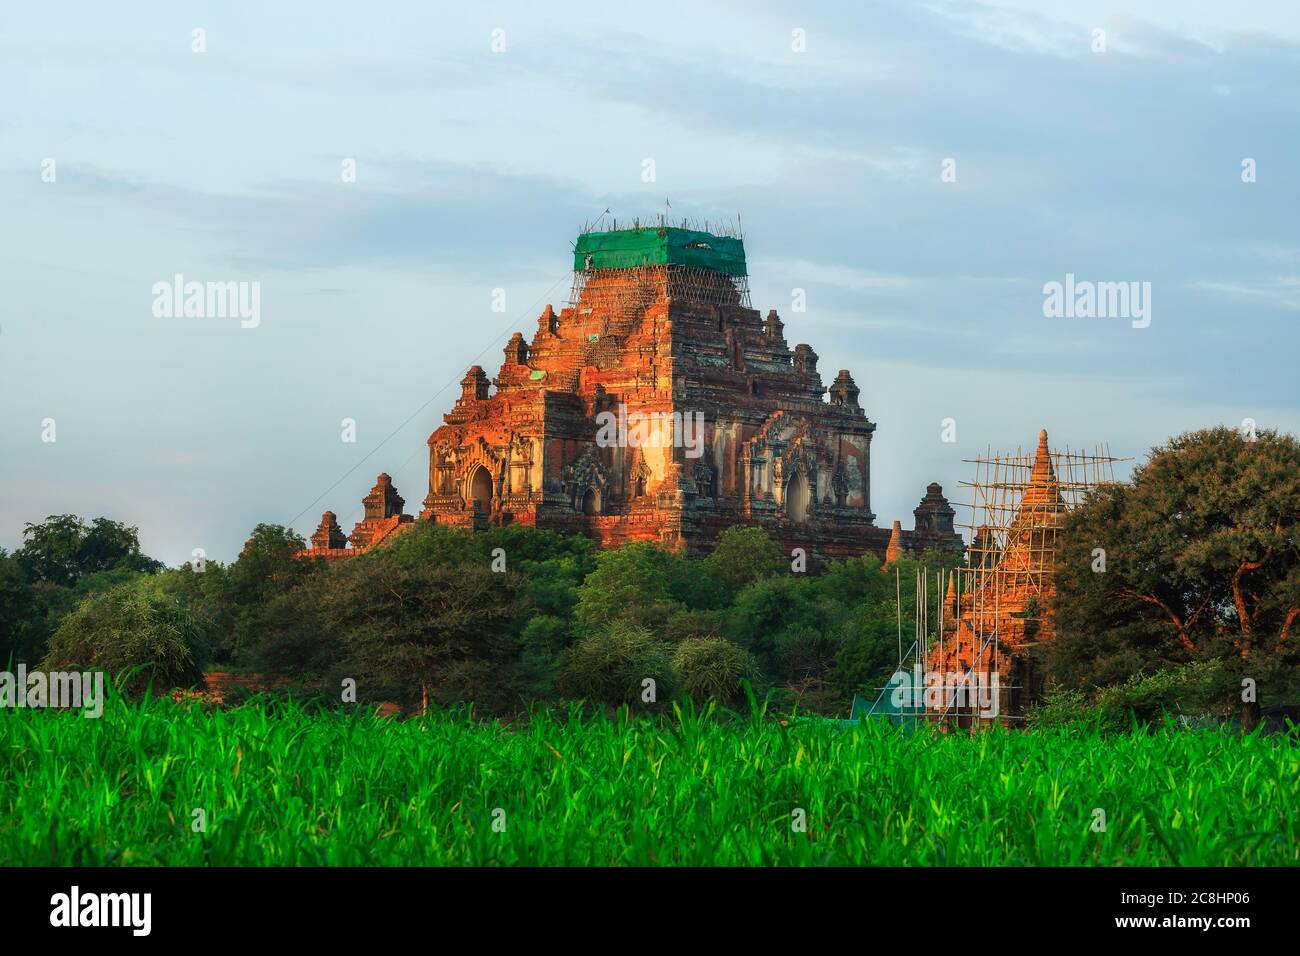 Grandi pagode di mattoni antichi nella zona del Patrimonio Mondiale di Bagan, Myanmar. Foto Stock